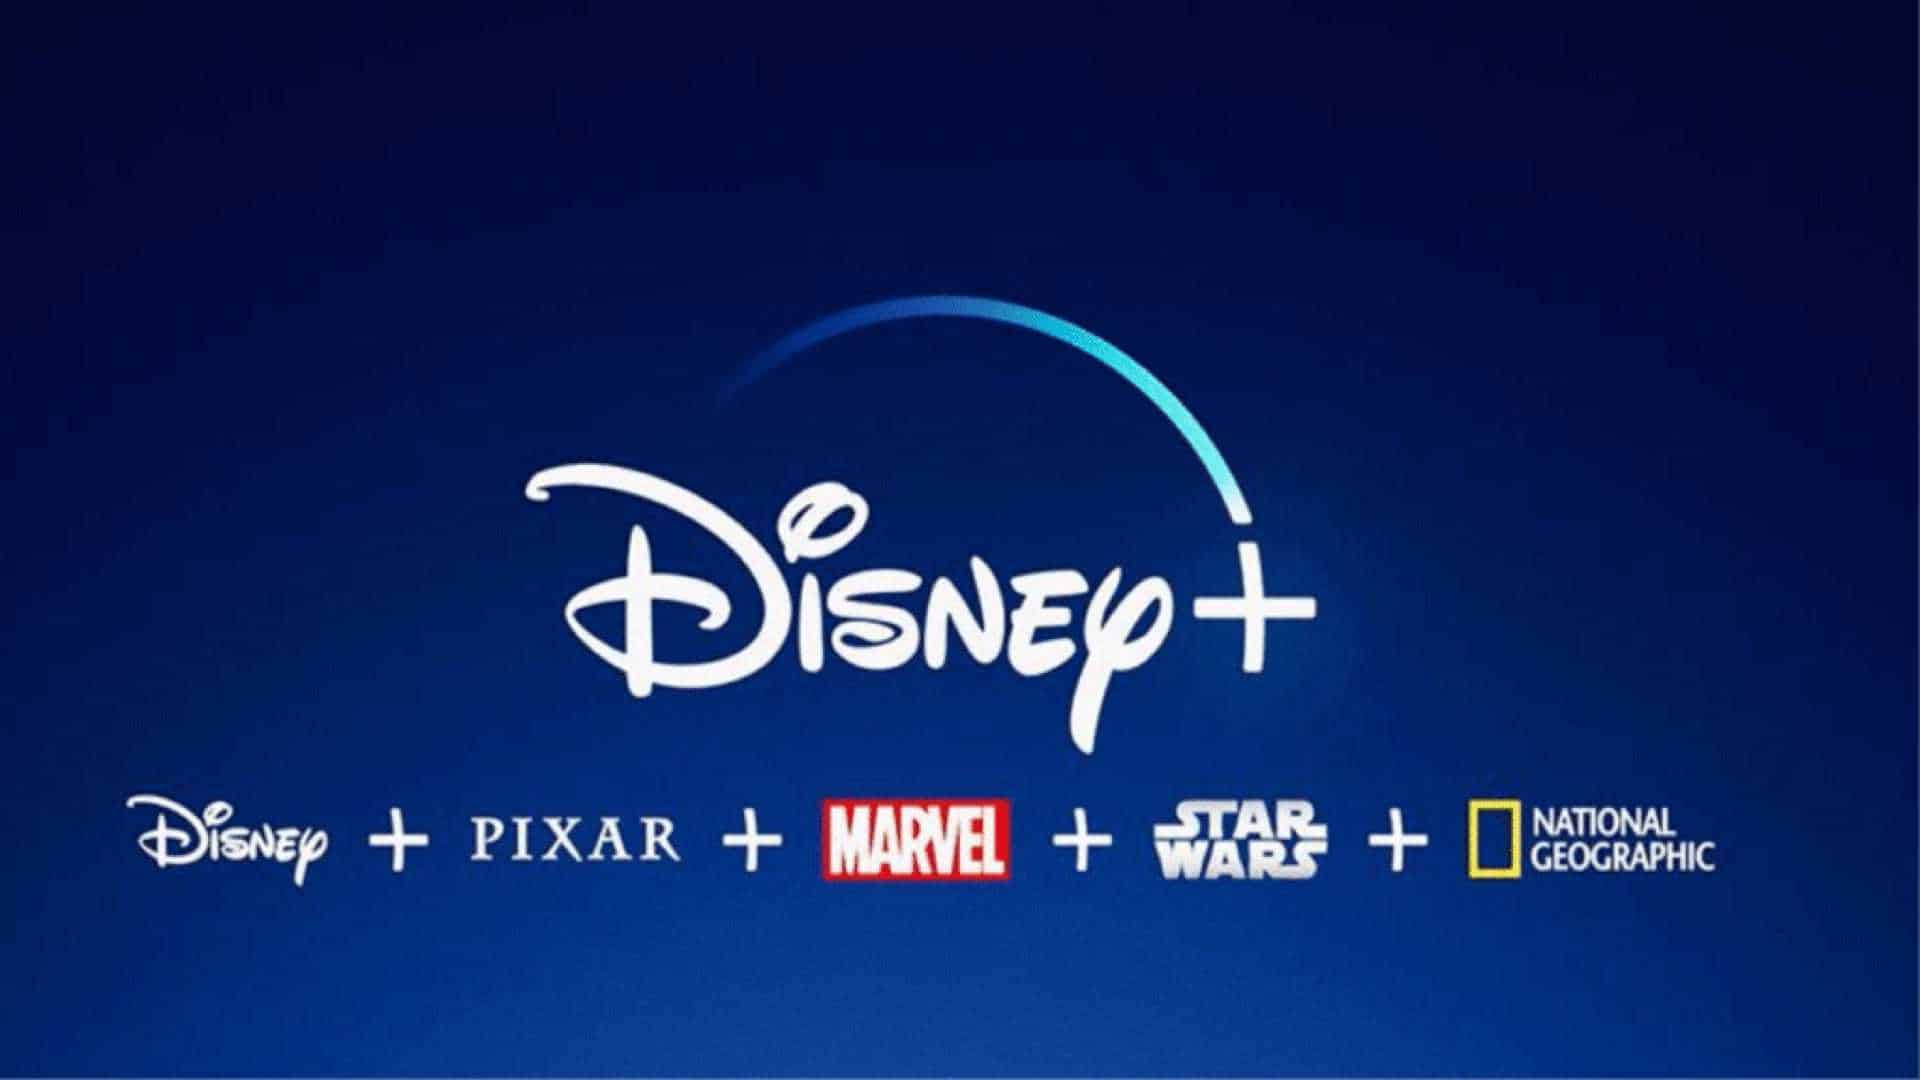 Estes dois film da Marvel foram retirados da Disney+!  Pork!?